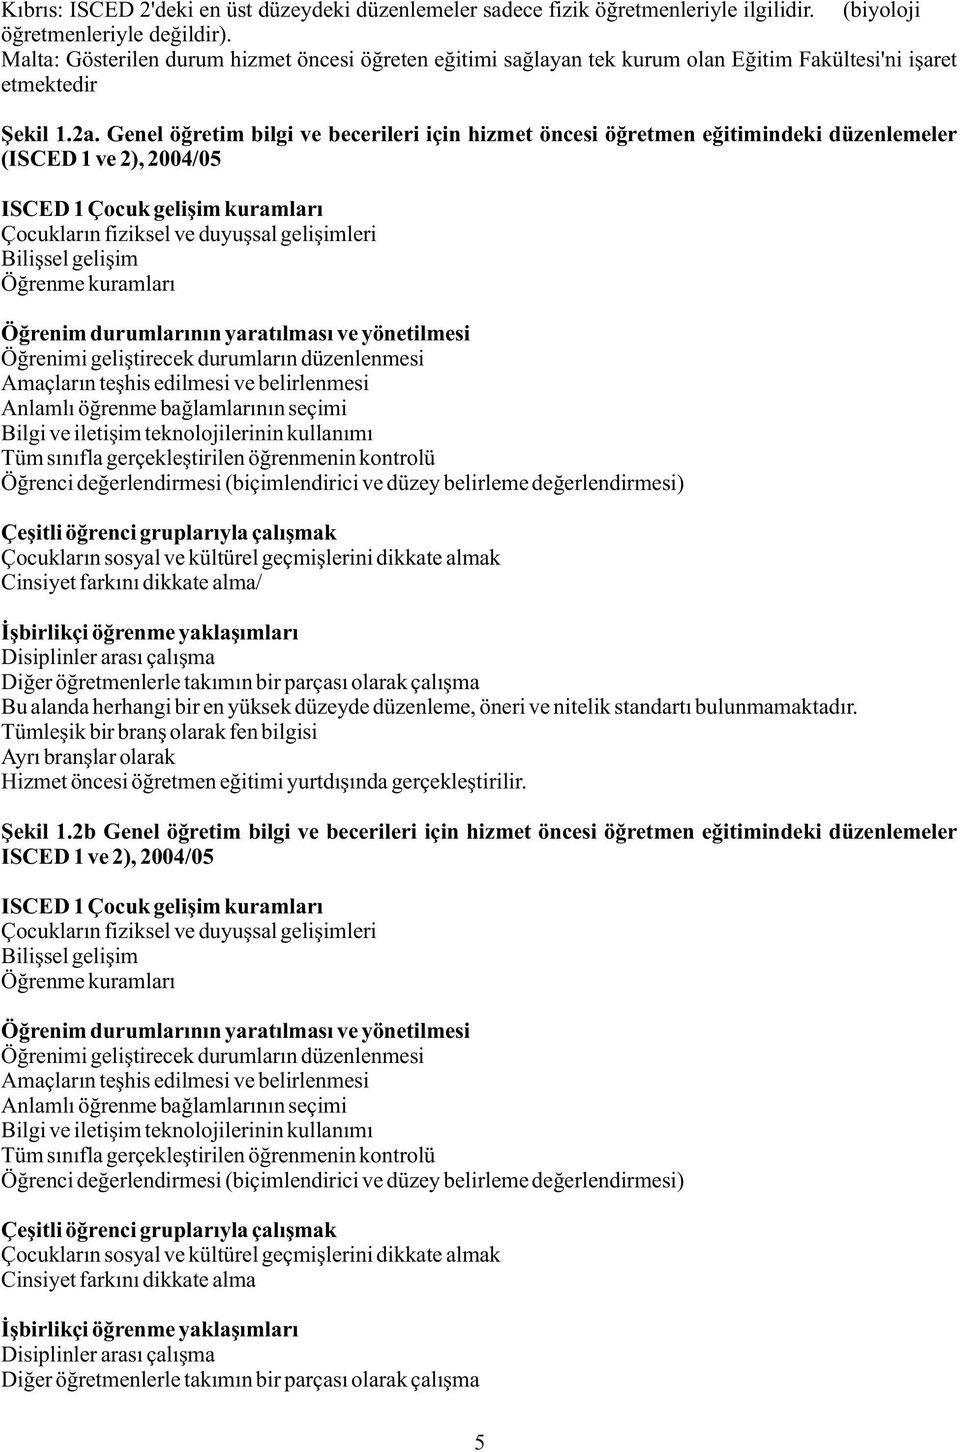 Genel öðretim bilgi ve becerileri için hizmet öncesi öðretmen eðitimindeki düzenlemeler (ISCED 1 ve 2), 2004/05 ISCED 1 Çocuk geliþim kuramlarý Çocuklarýn fiziksel ve duyuþsal geliþimleri Biliþsel